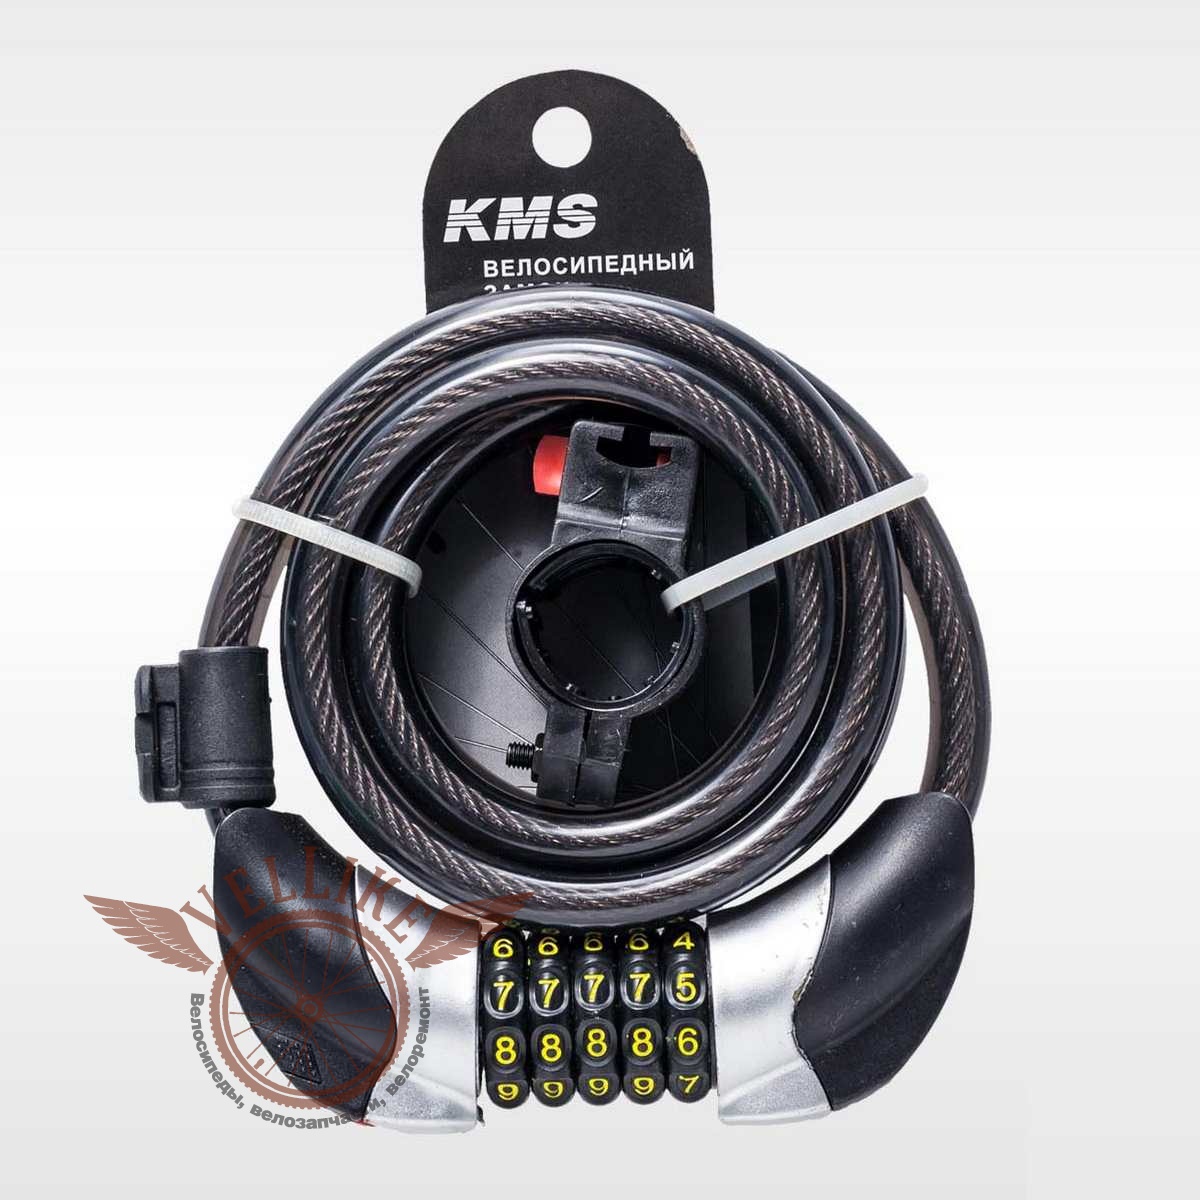 Велозамок "KMS", трос Ø 12*1500, сменный код с подсветкой, инд. упак, модель 2016 года